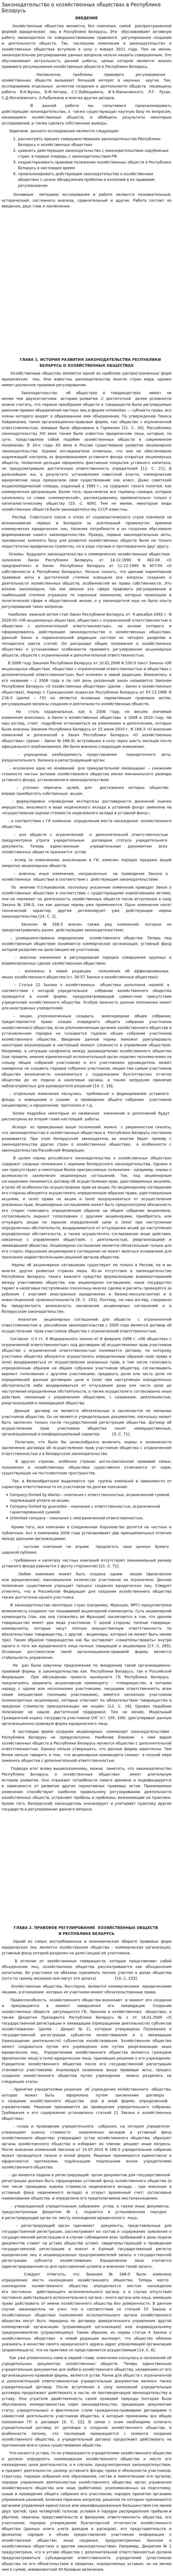 Законодательство о хозяйственных обществах в Республике Беларусь